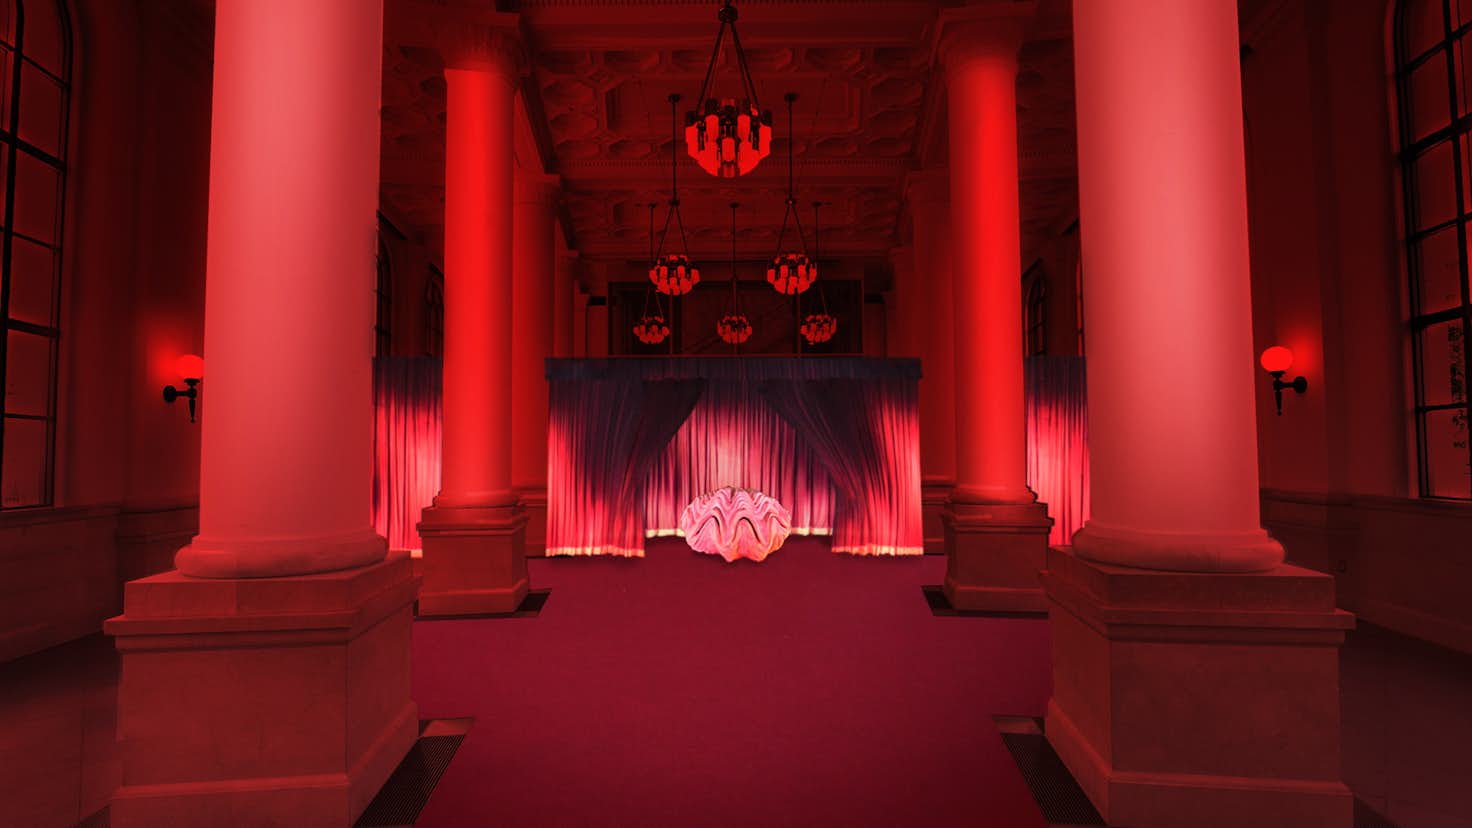 横浜の夜に 幻の赤い部屋が出現 Ycc ヨコハマ創造都市センターで開催の Red Room や高橋匡太の個展に注目 美術手帖